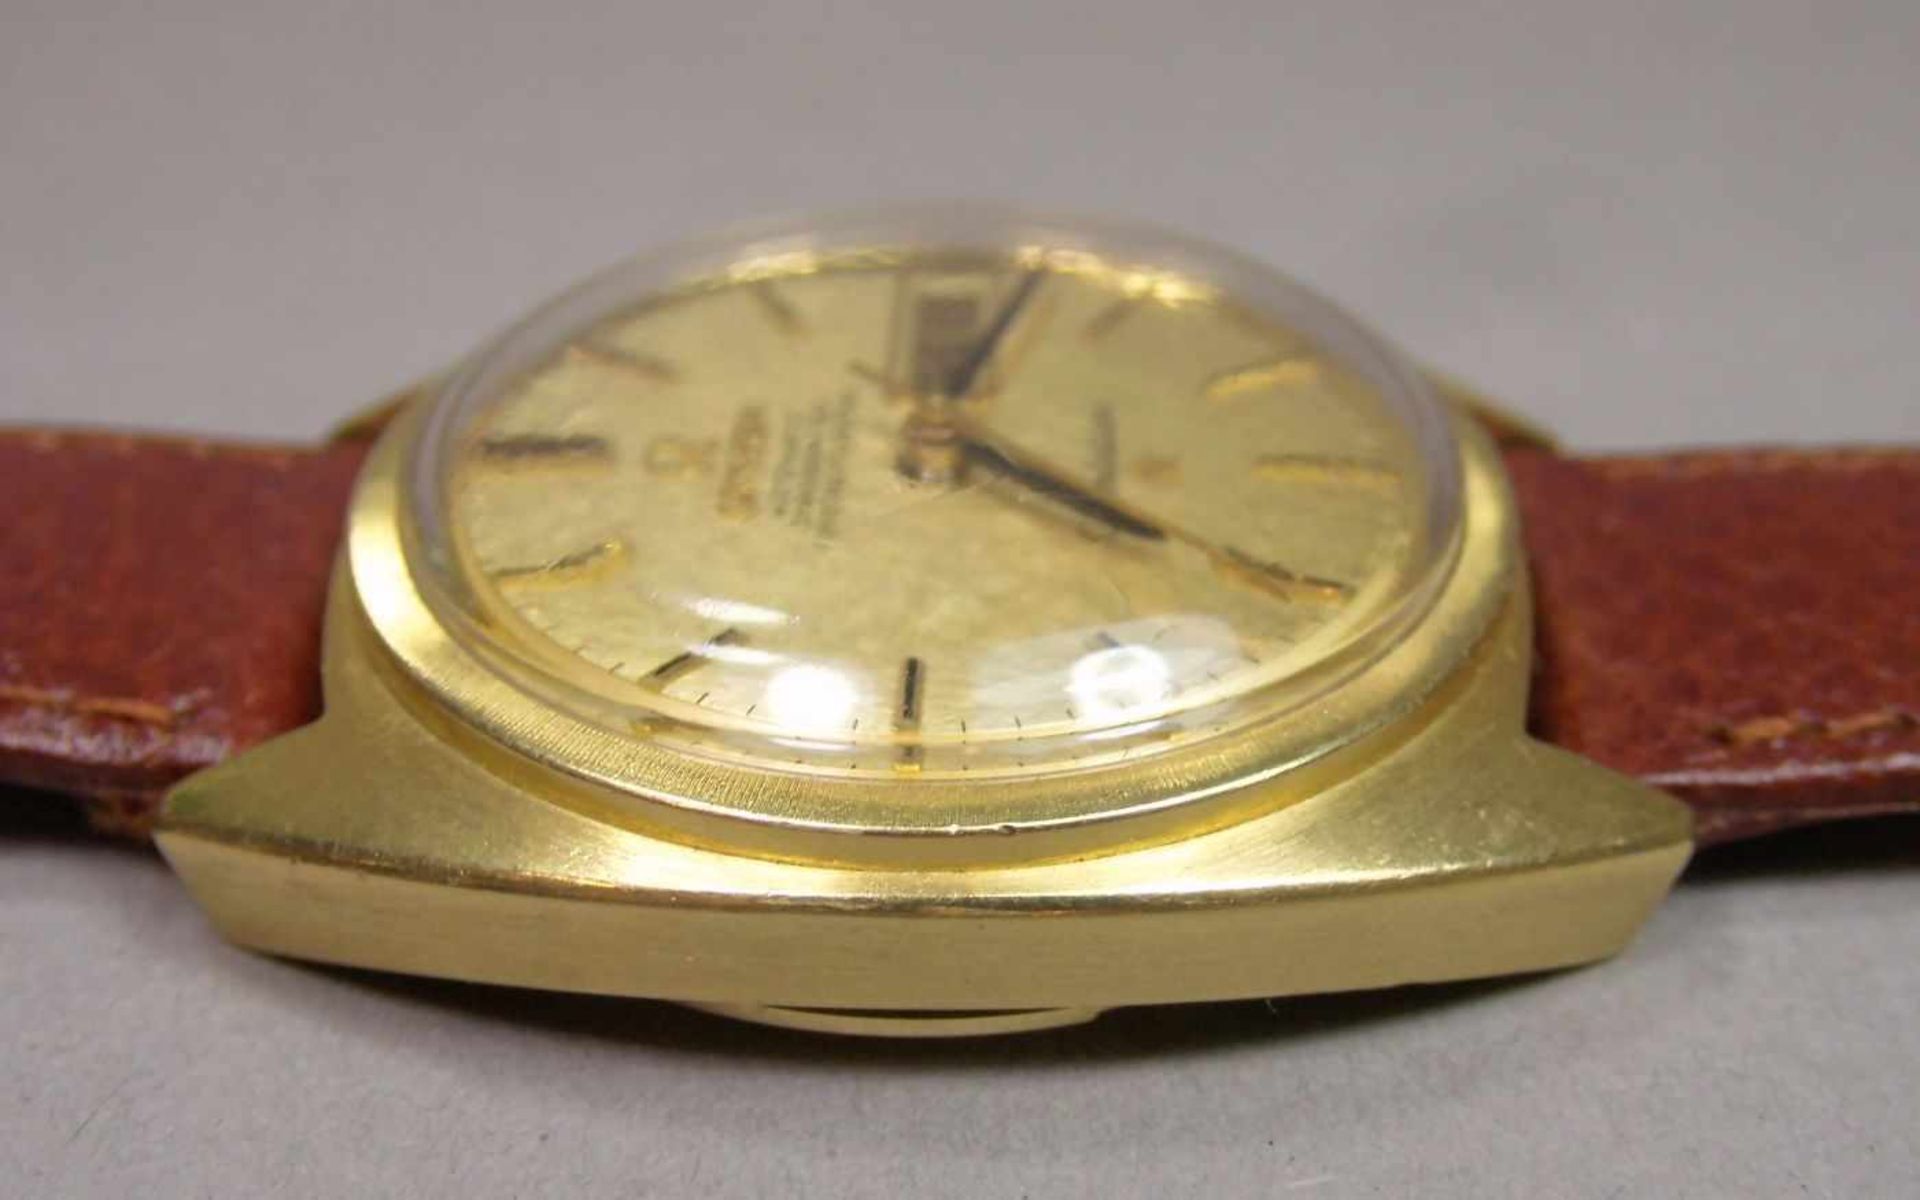 VINTAGE ARMBANDUHR: OMEGA CONSTELLATION / wristwatch, Herstellungsjahr 1968, Automatik-Uhr, - Image 5 of 11